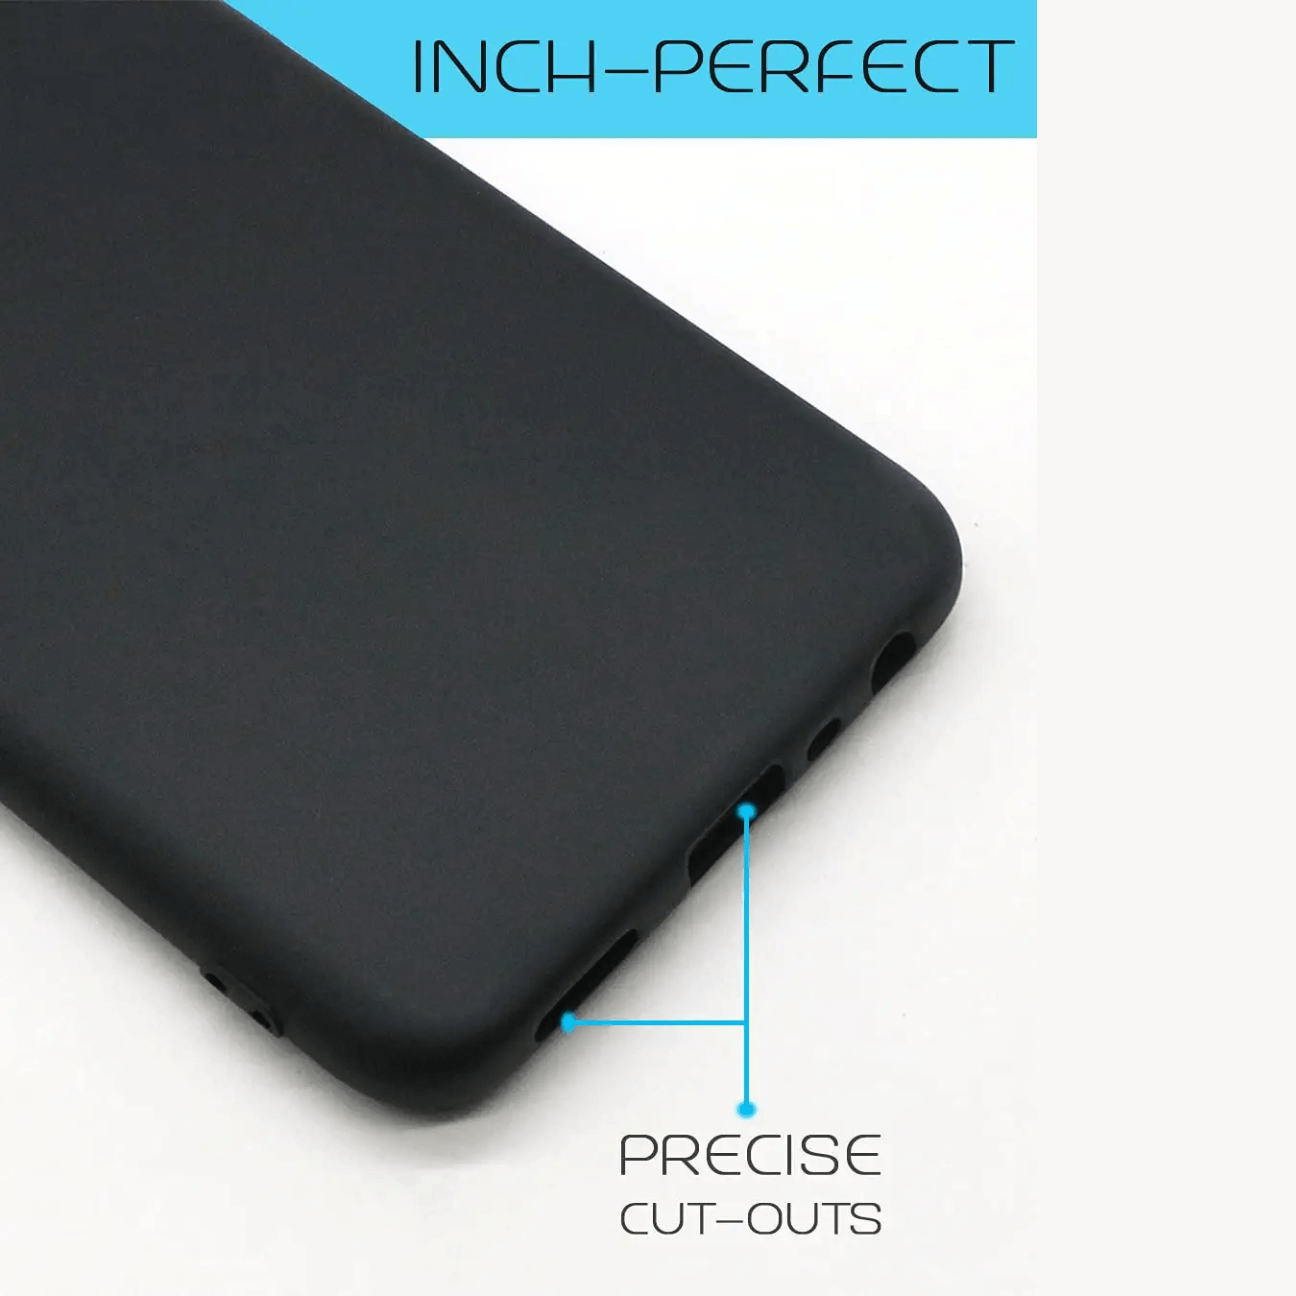 Realme Narzo 10 (2020) Black Soft Silicone Phone Case